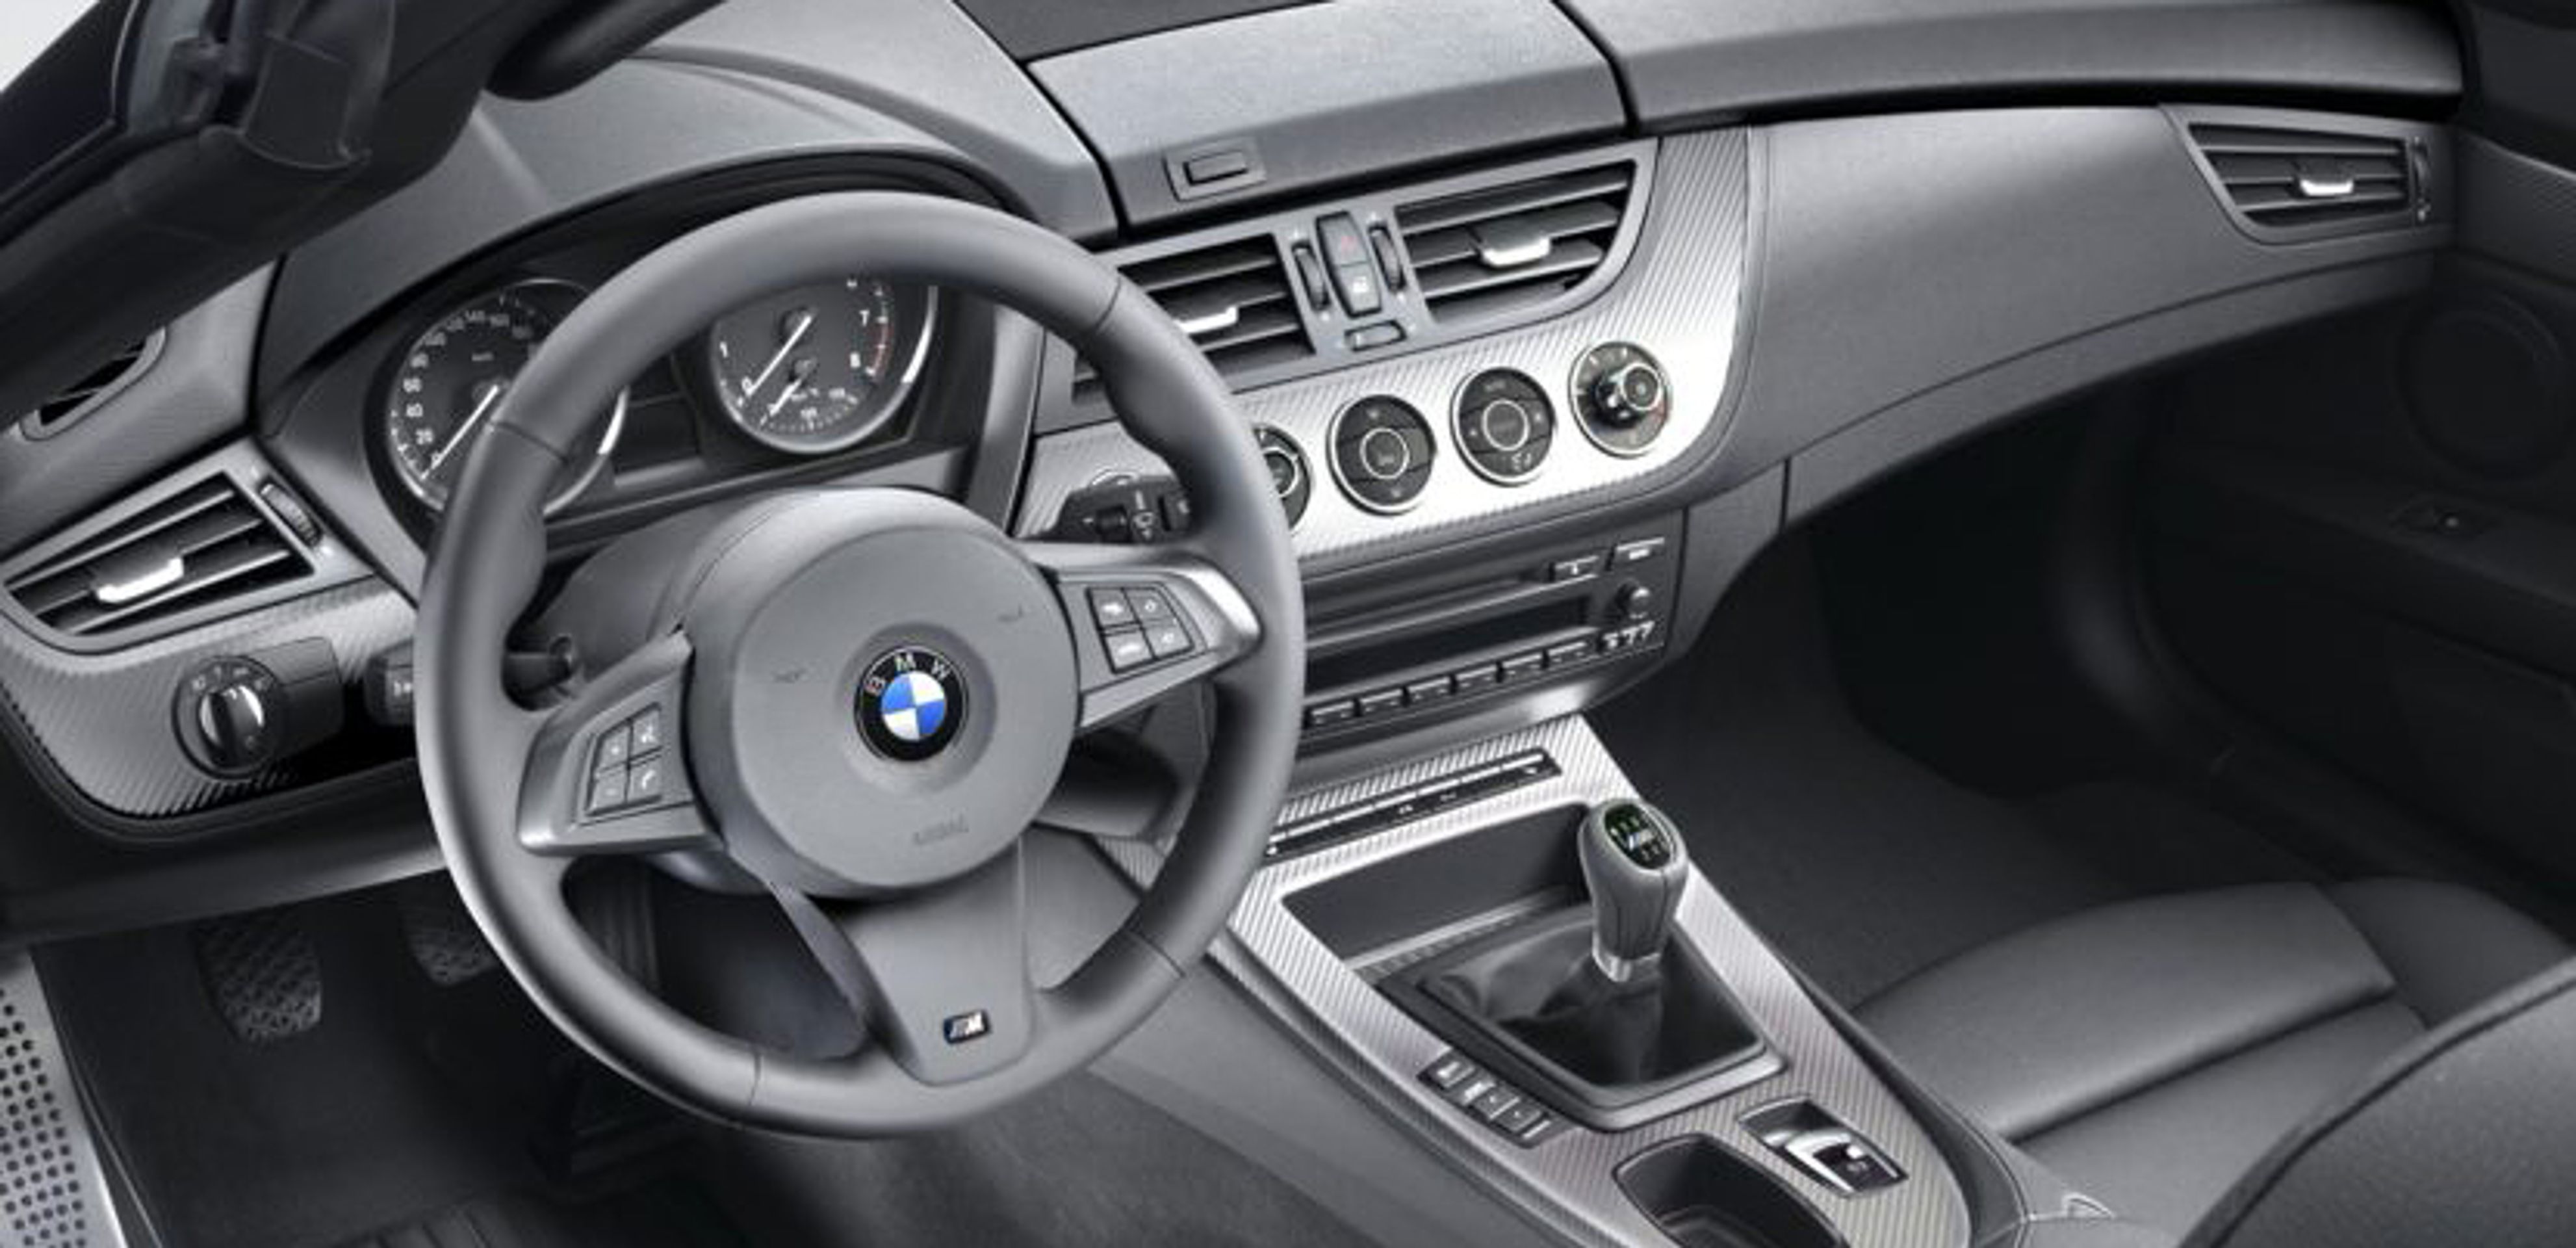 BMW Z4: Staré vs. nové - Fotogalerie: Srovnání starší a nové verze BMW Z4 (10/18)